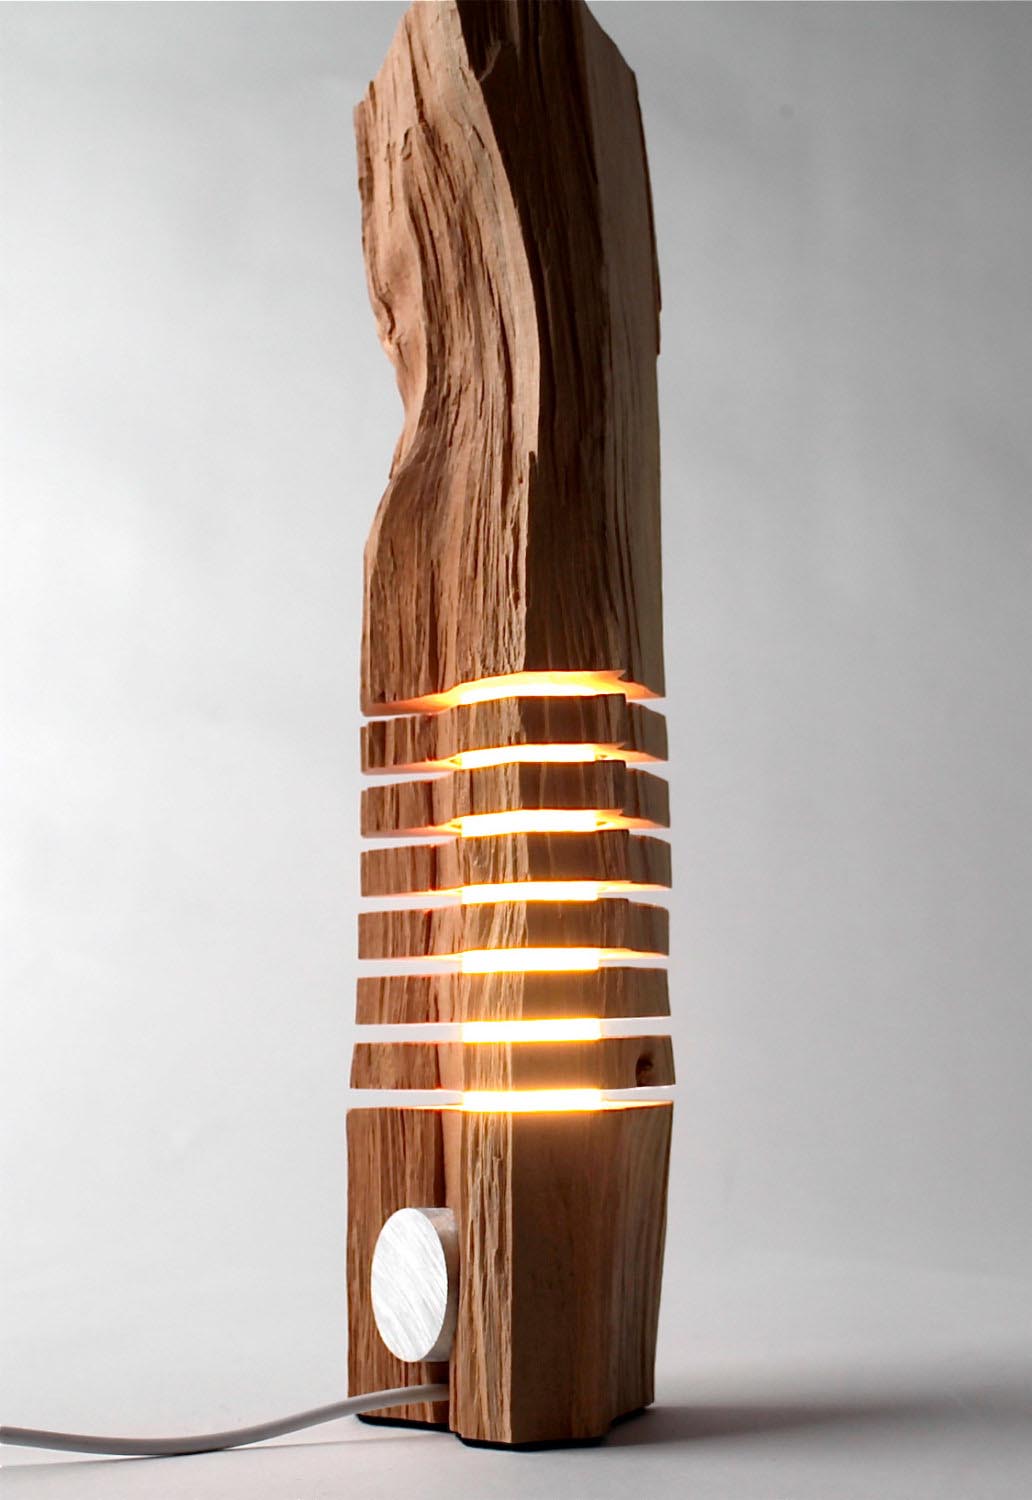 Rustic Wooden Floor Lamps